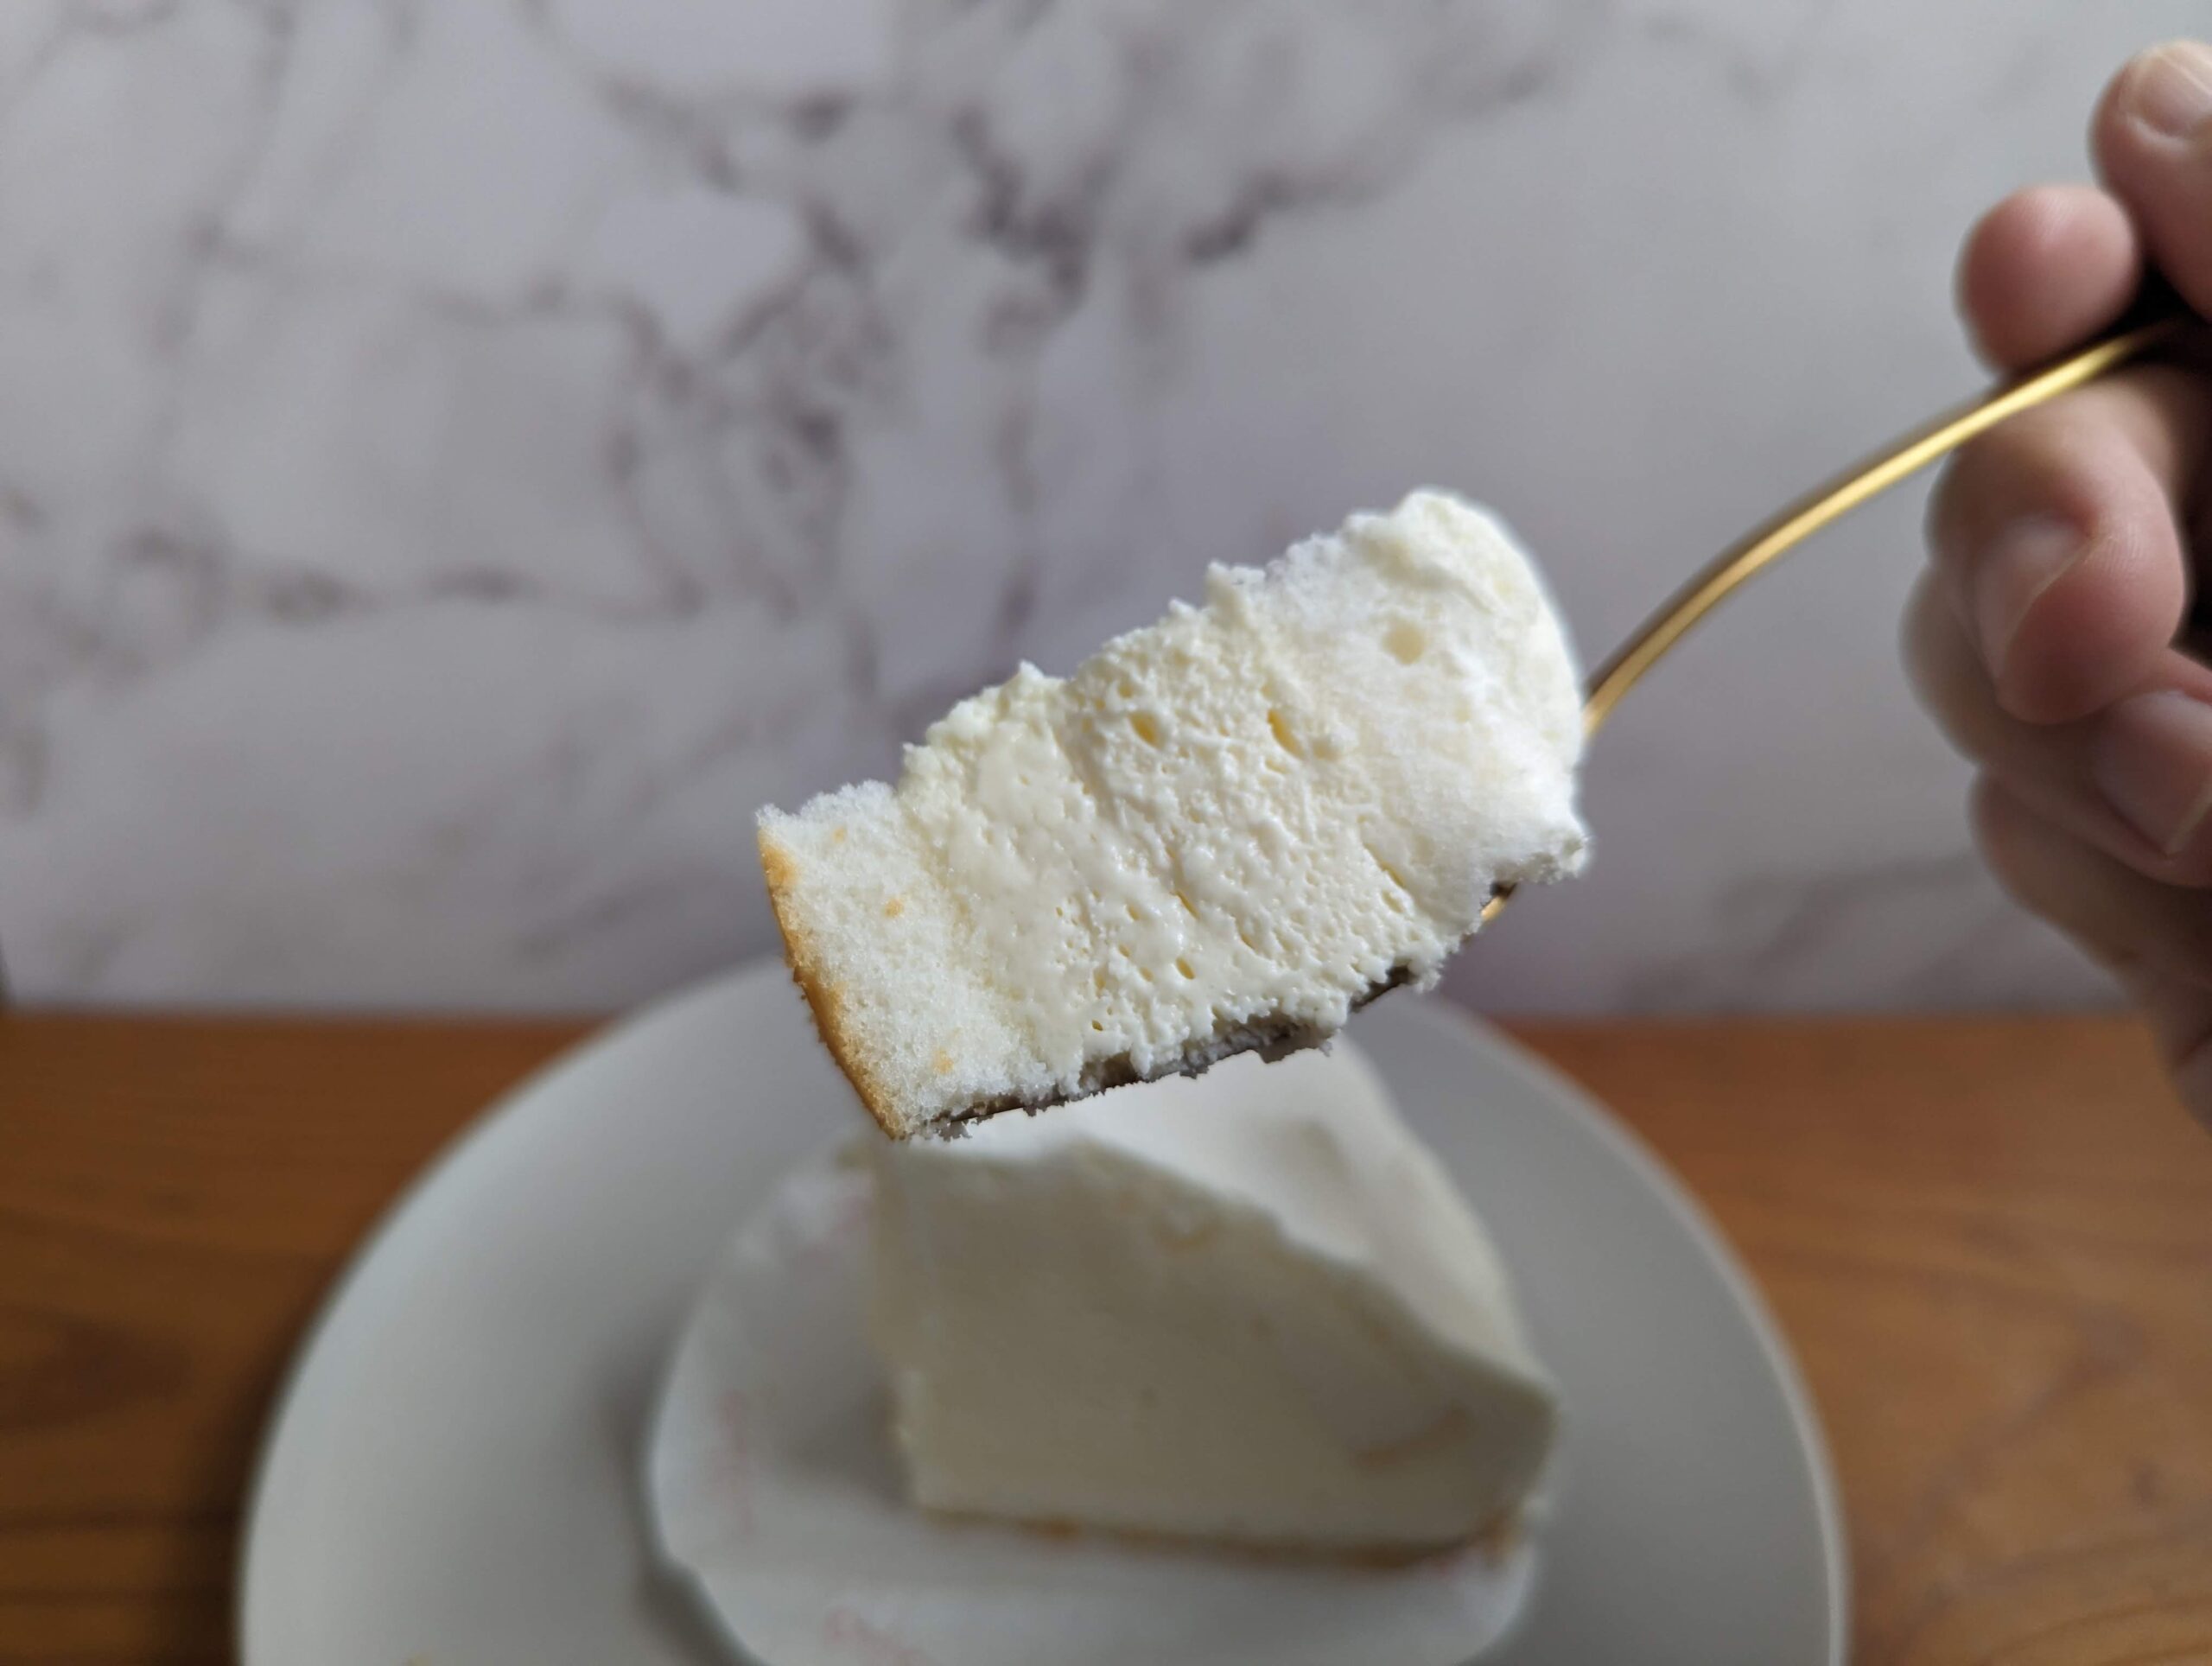 銀座コージーコーナーの「北海道産5種のチーズを使ったこだわりレアチーズ」の写真